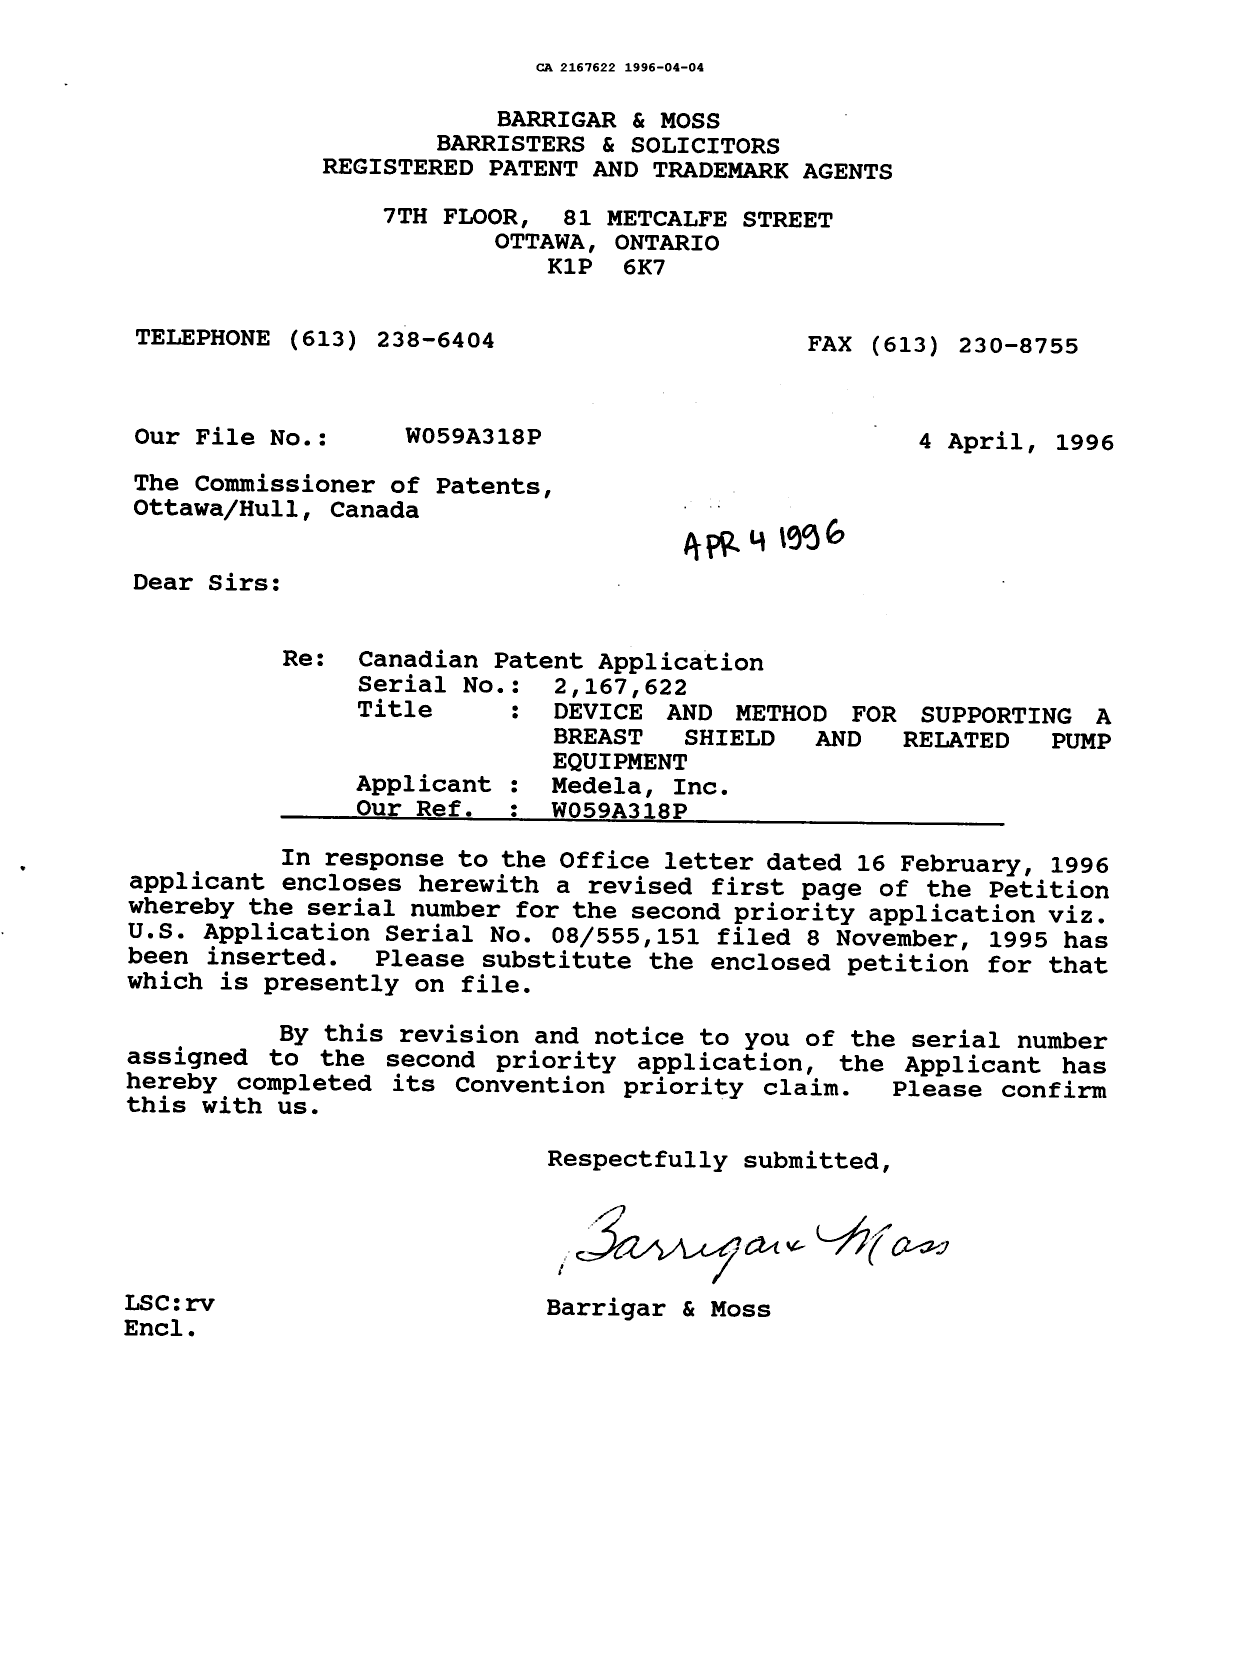 Document de brevet canadien 2167622. Correspondance 19951204. Image 1 de 1